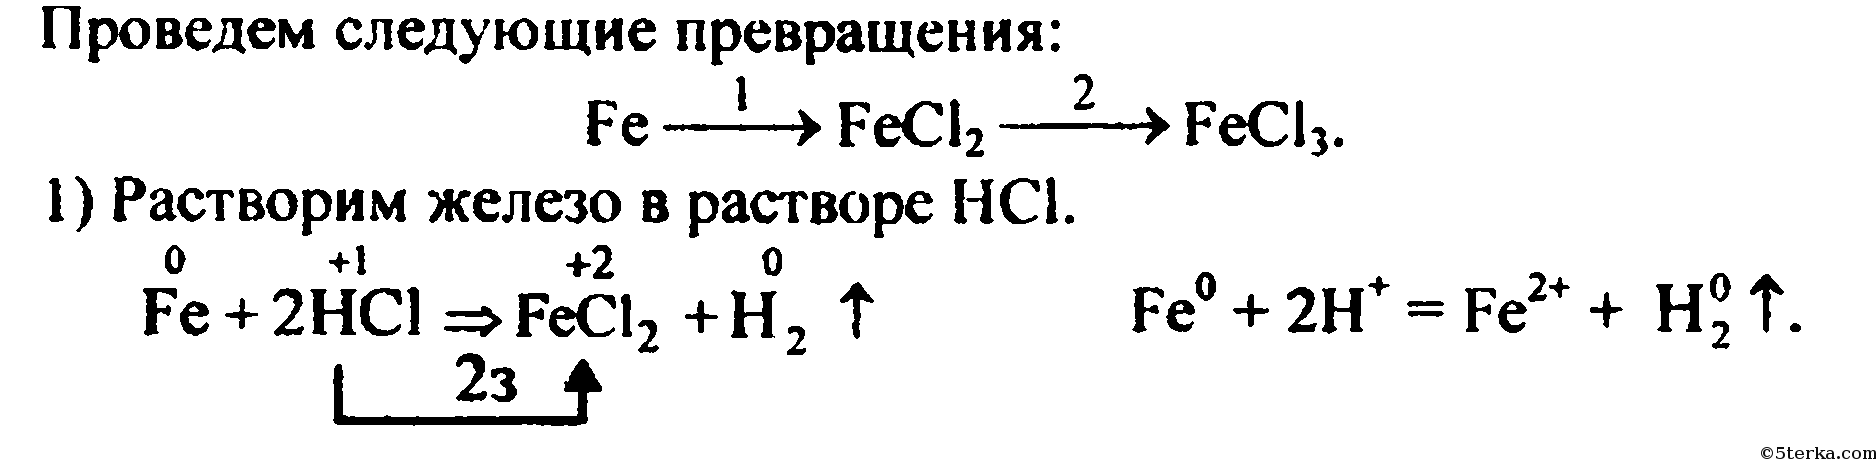 Хлорид железа 2 получают реакцией. Получение сульфата железа 2. Способы получения хлорида железа 2. Ионное уравнение получения железа.